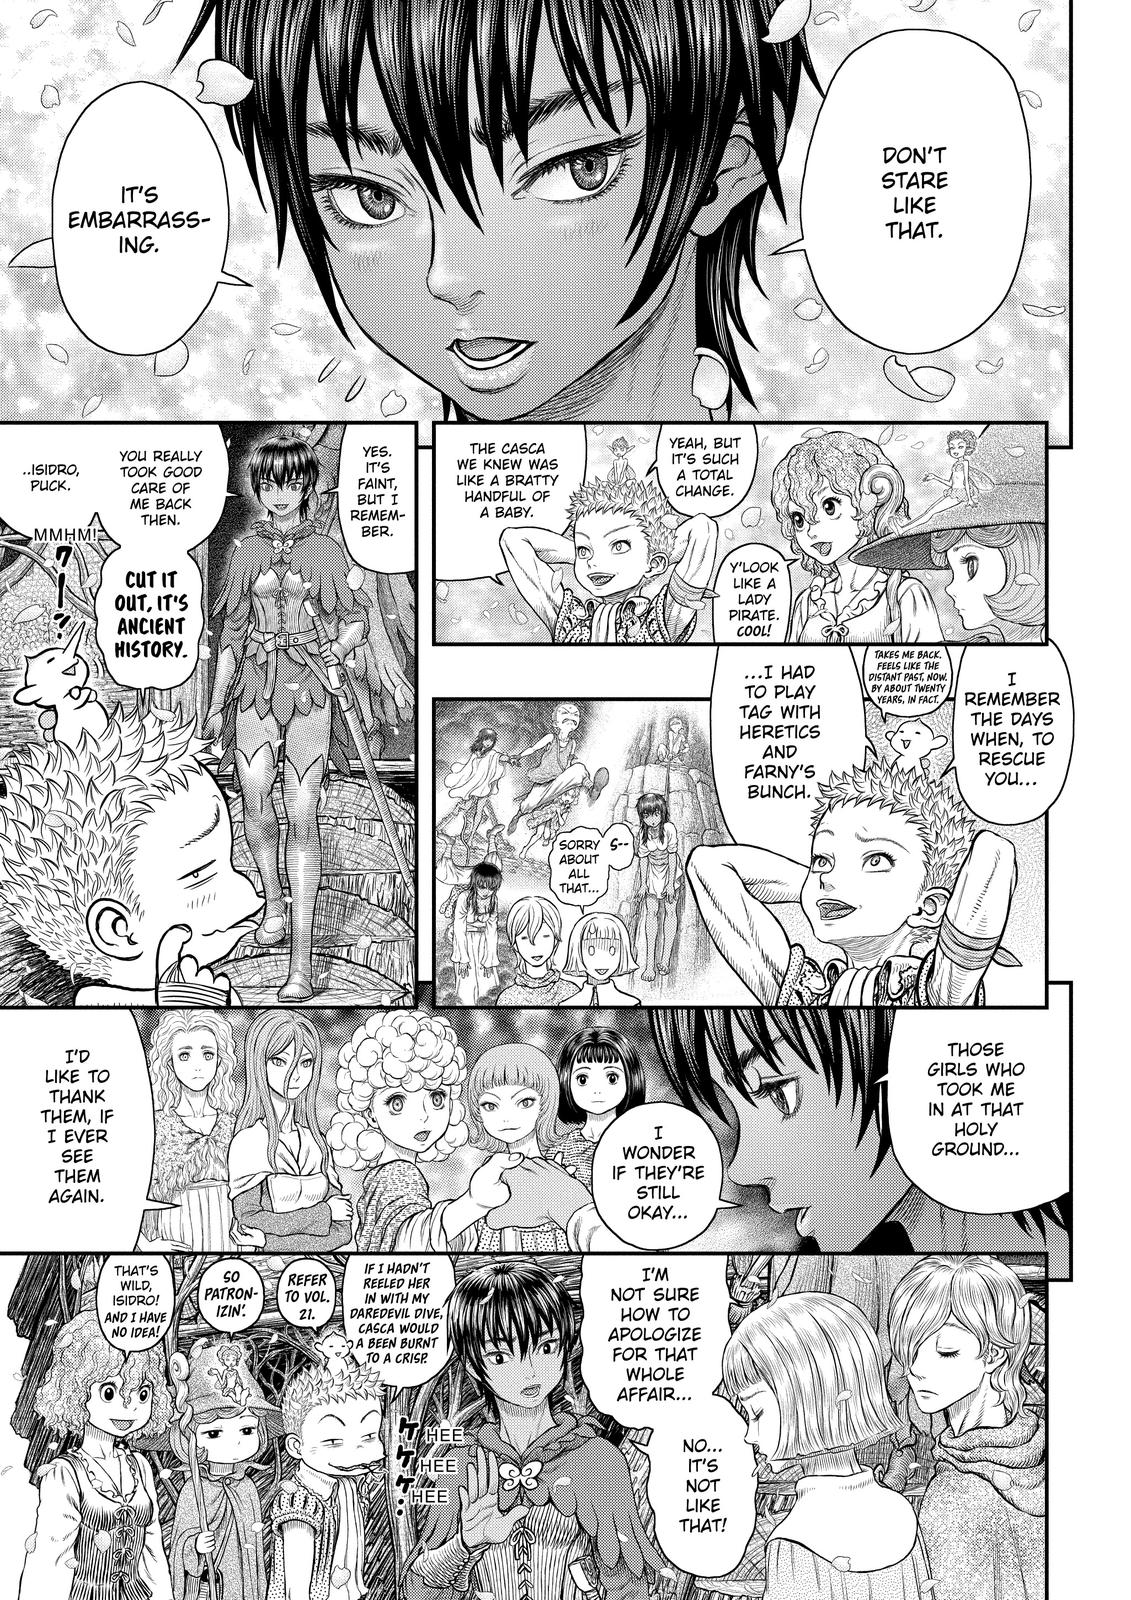 Berserk Manga Chapter 359 image 03